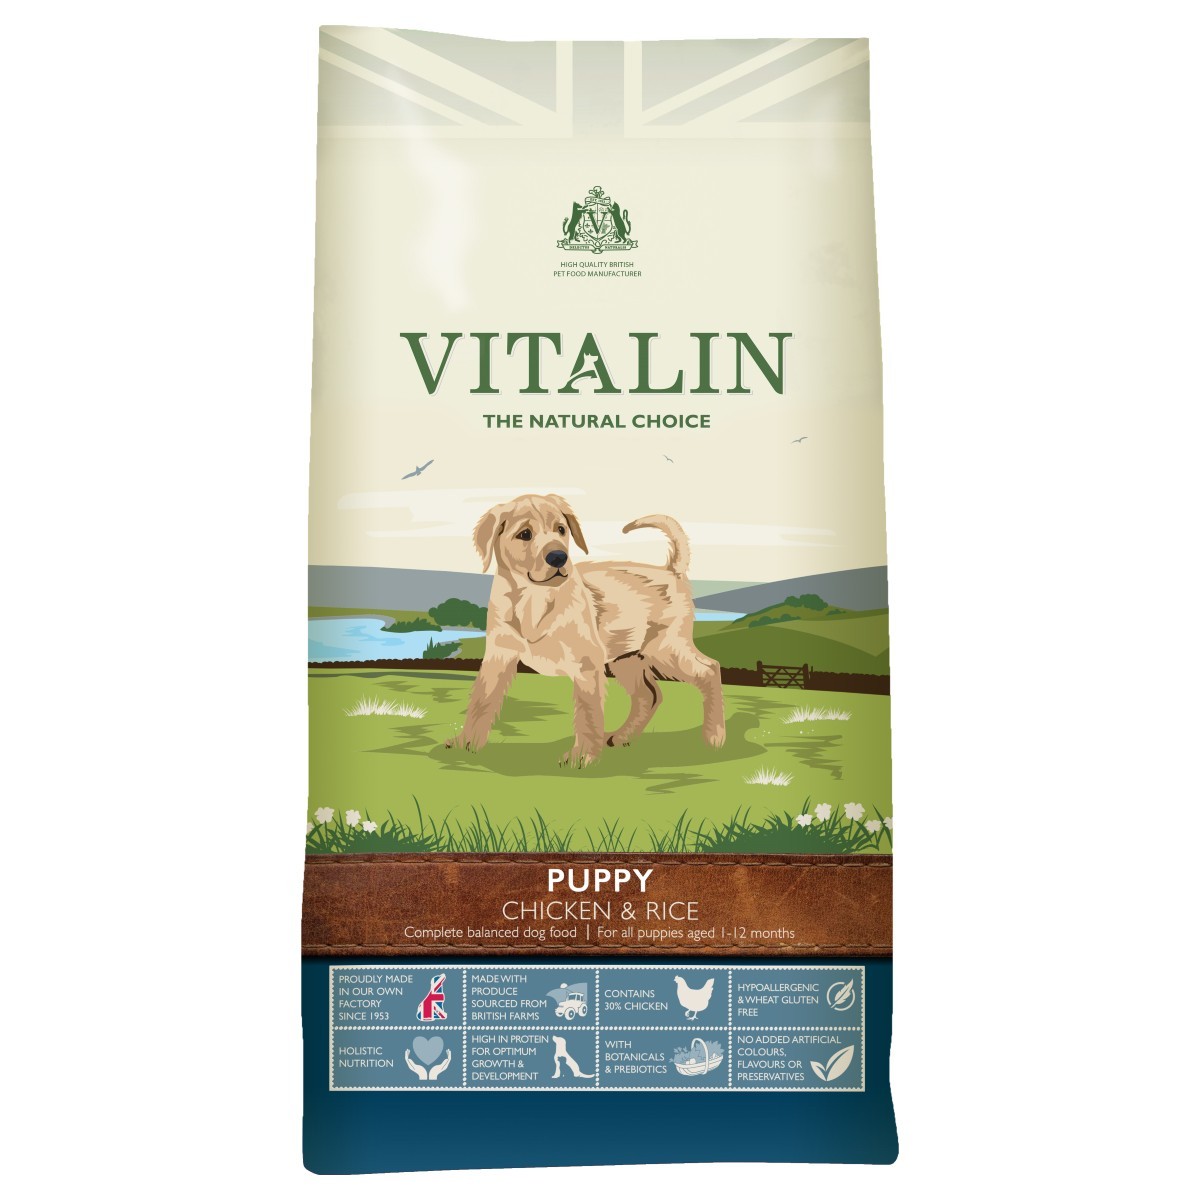 vitalin dog food